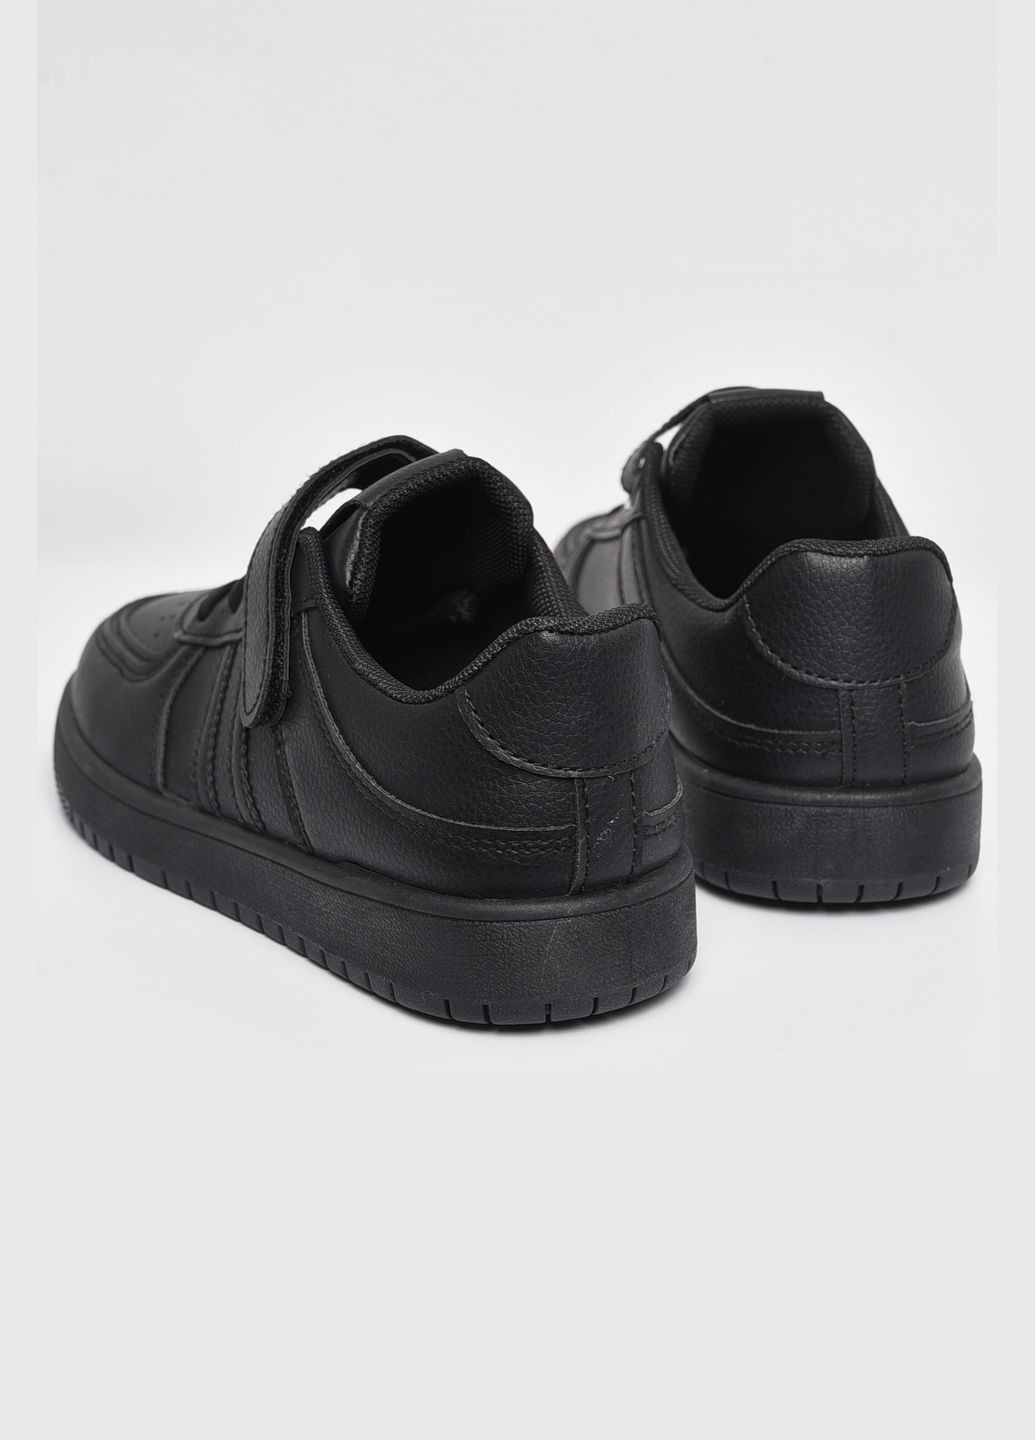 Чорні осінні кросівки дитячі чорного кольору на ліпучках Let's Shop